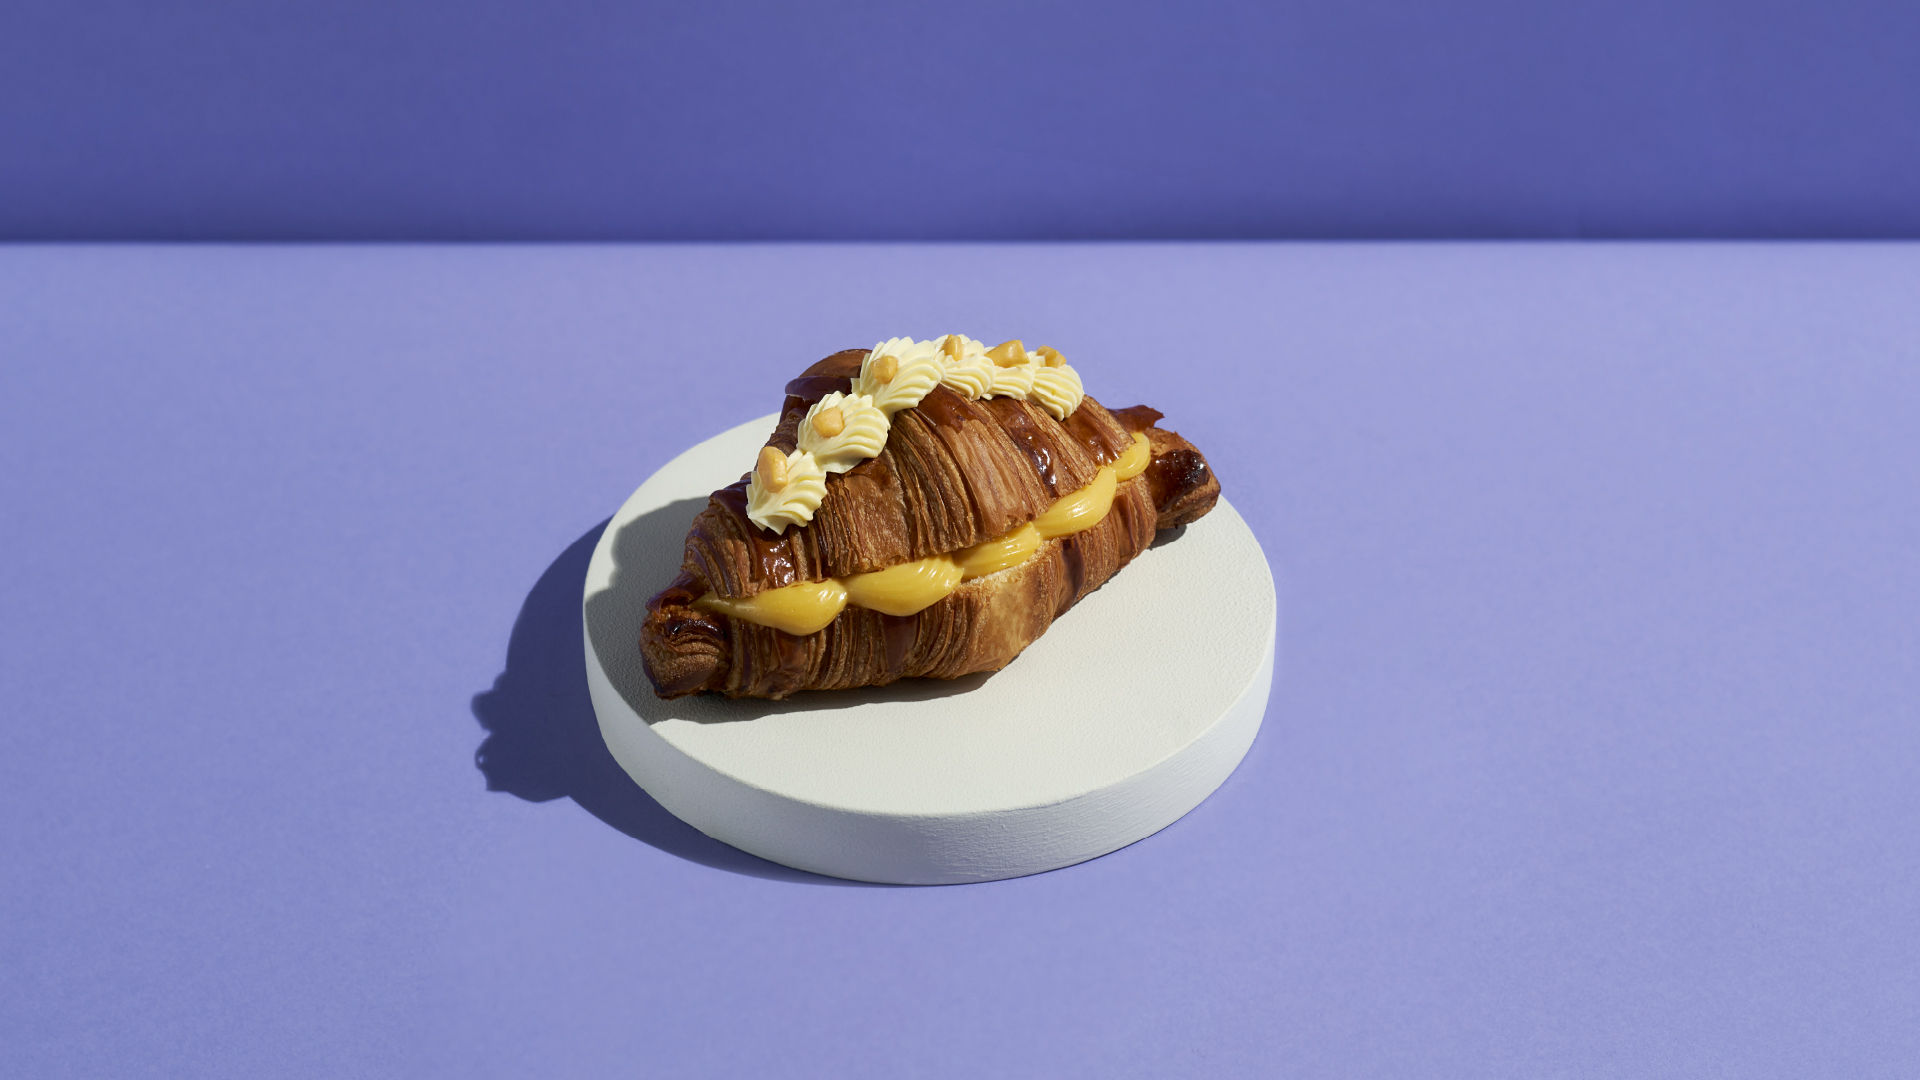 Croissant de maracuyá, la creación de Unai Fernández de Retana del restaurante El Clarete y artepan, con motivo del 40 aniversario de la casa 1